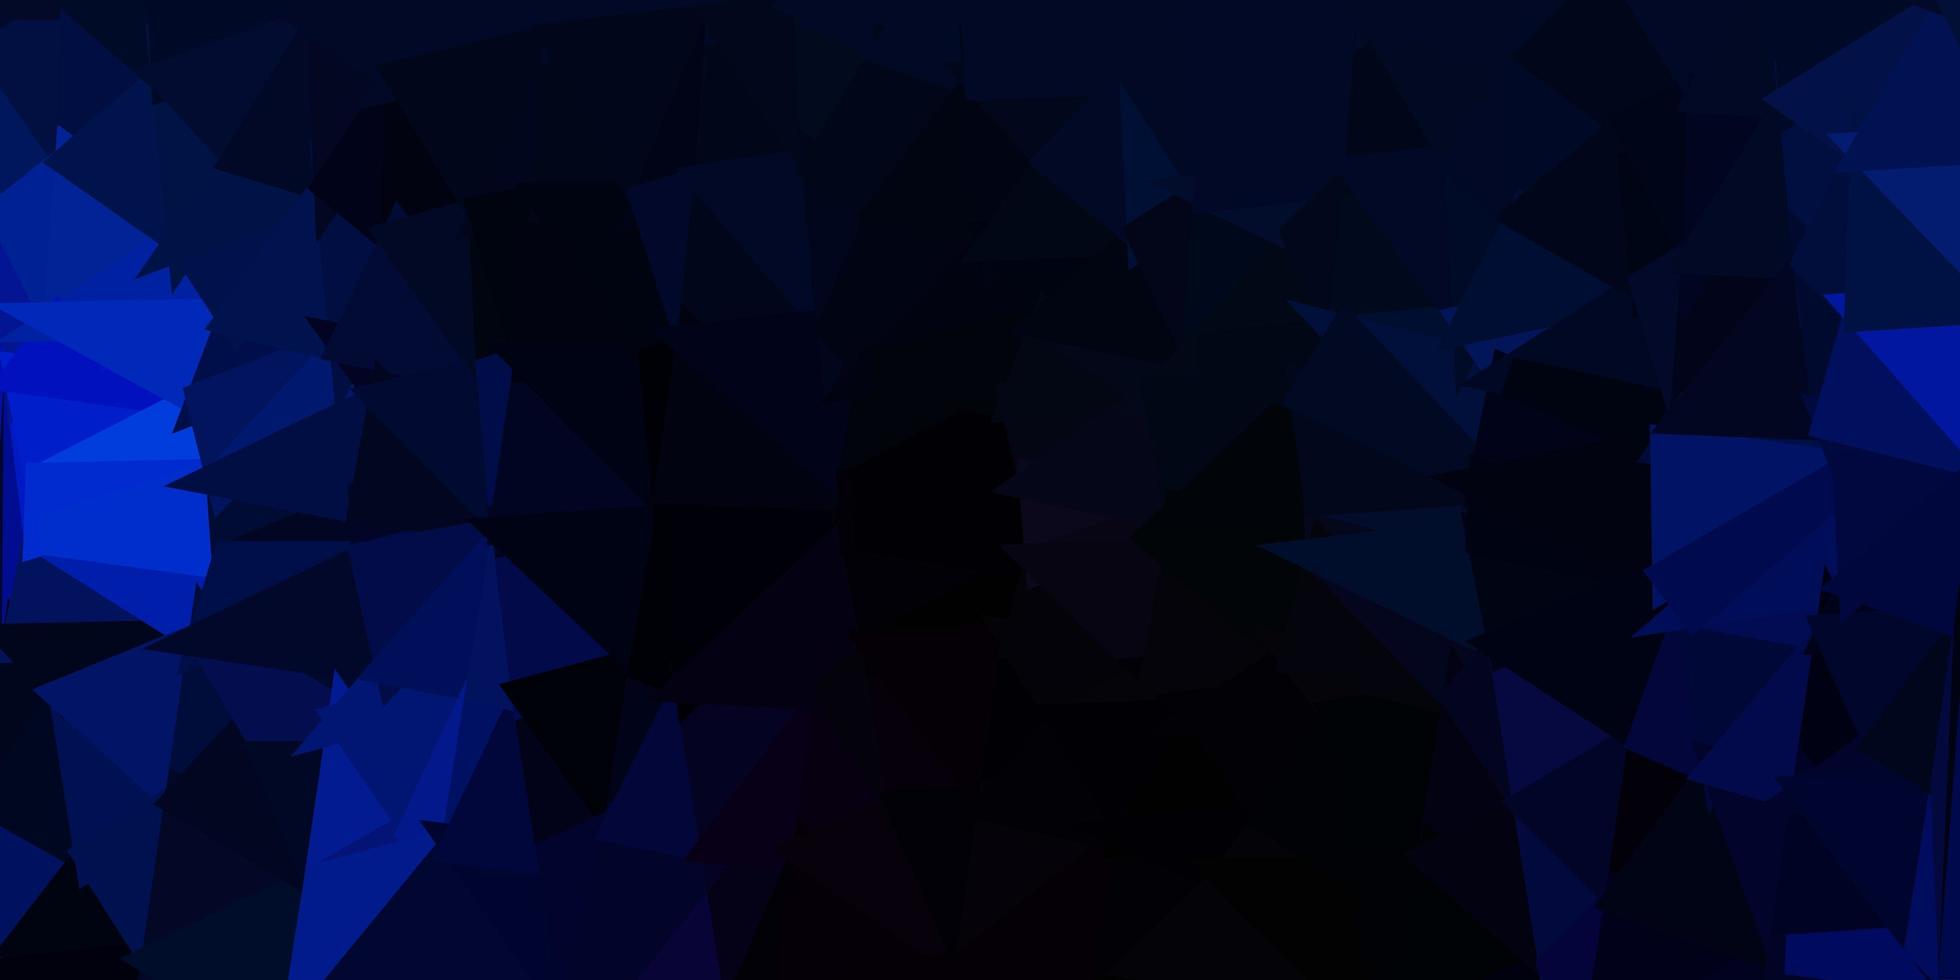 sfondo poligonale vettoriale blu scuro.